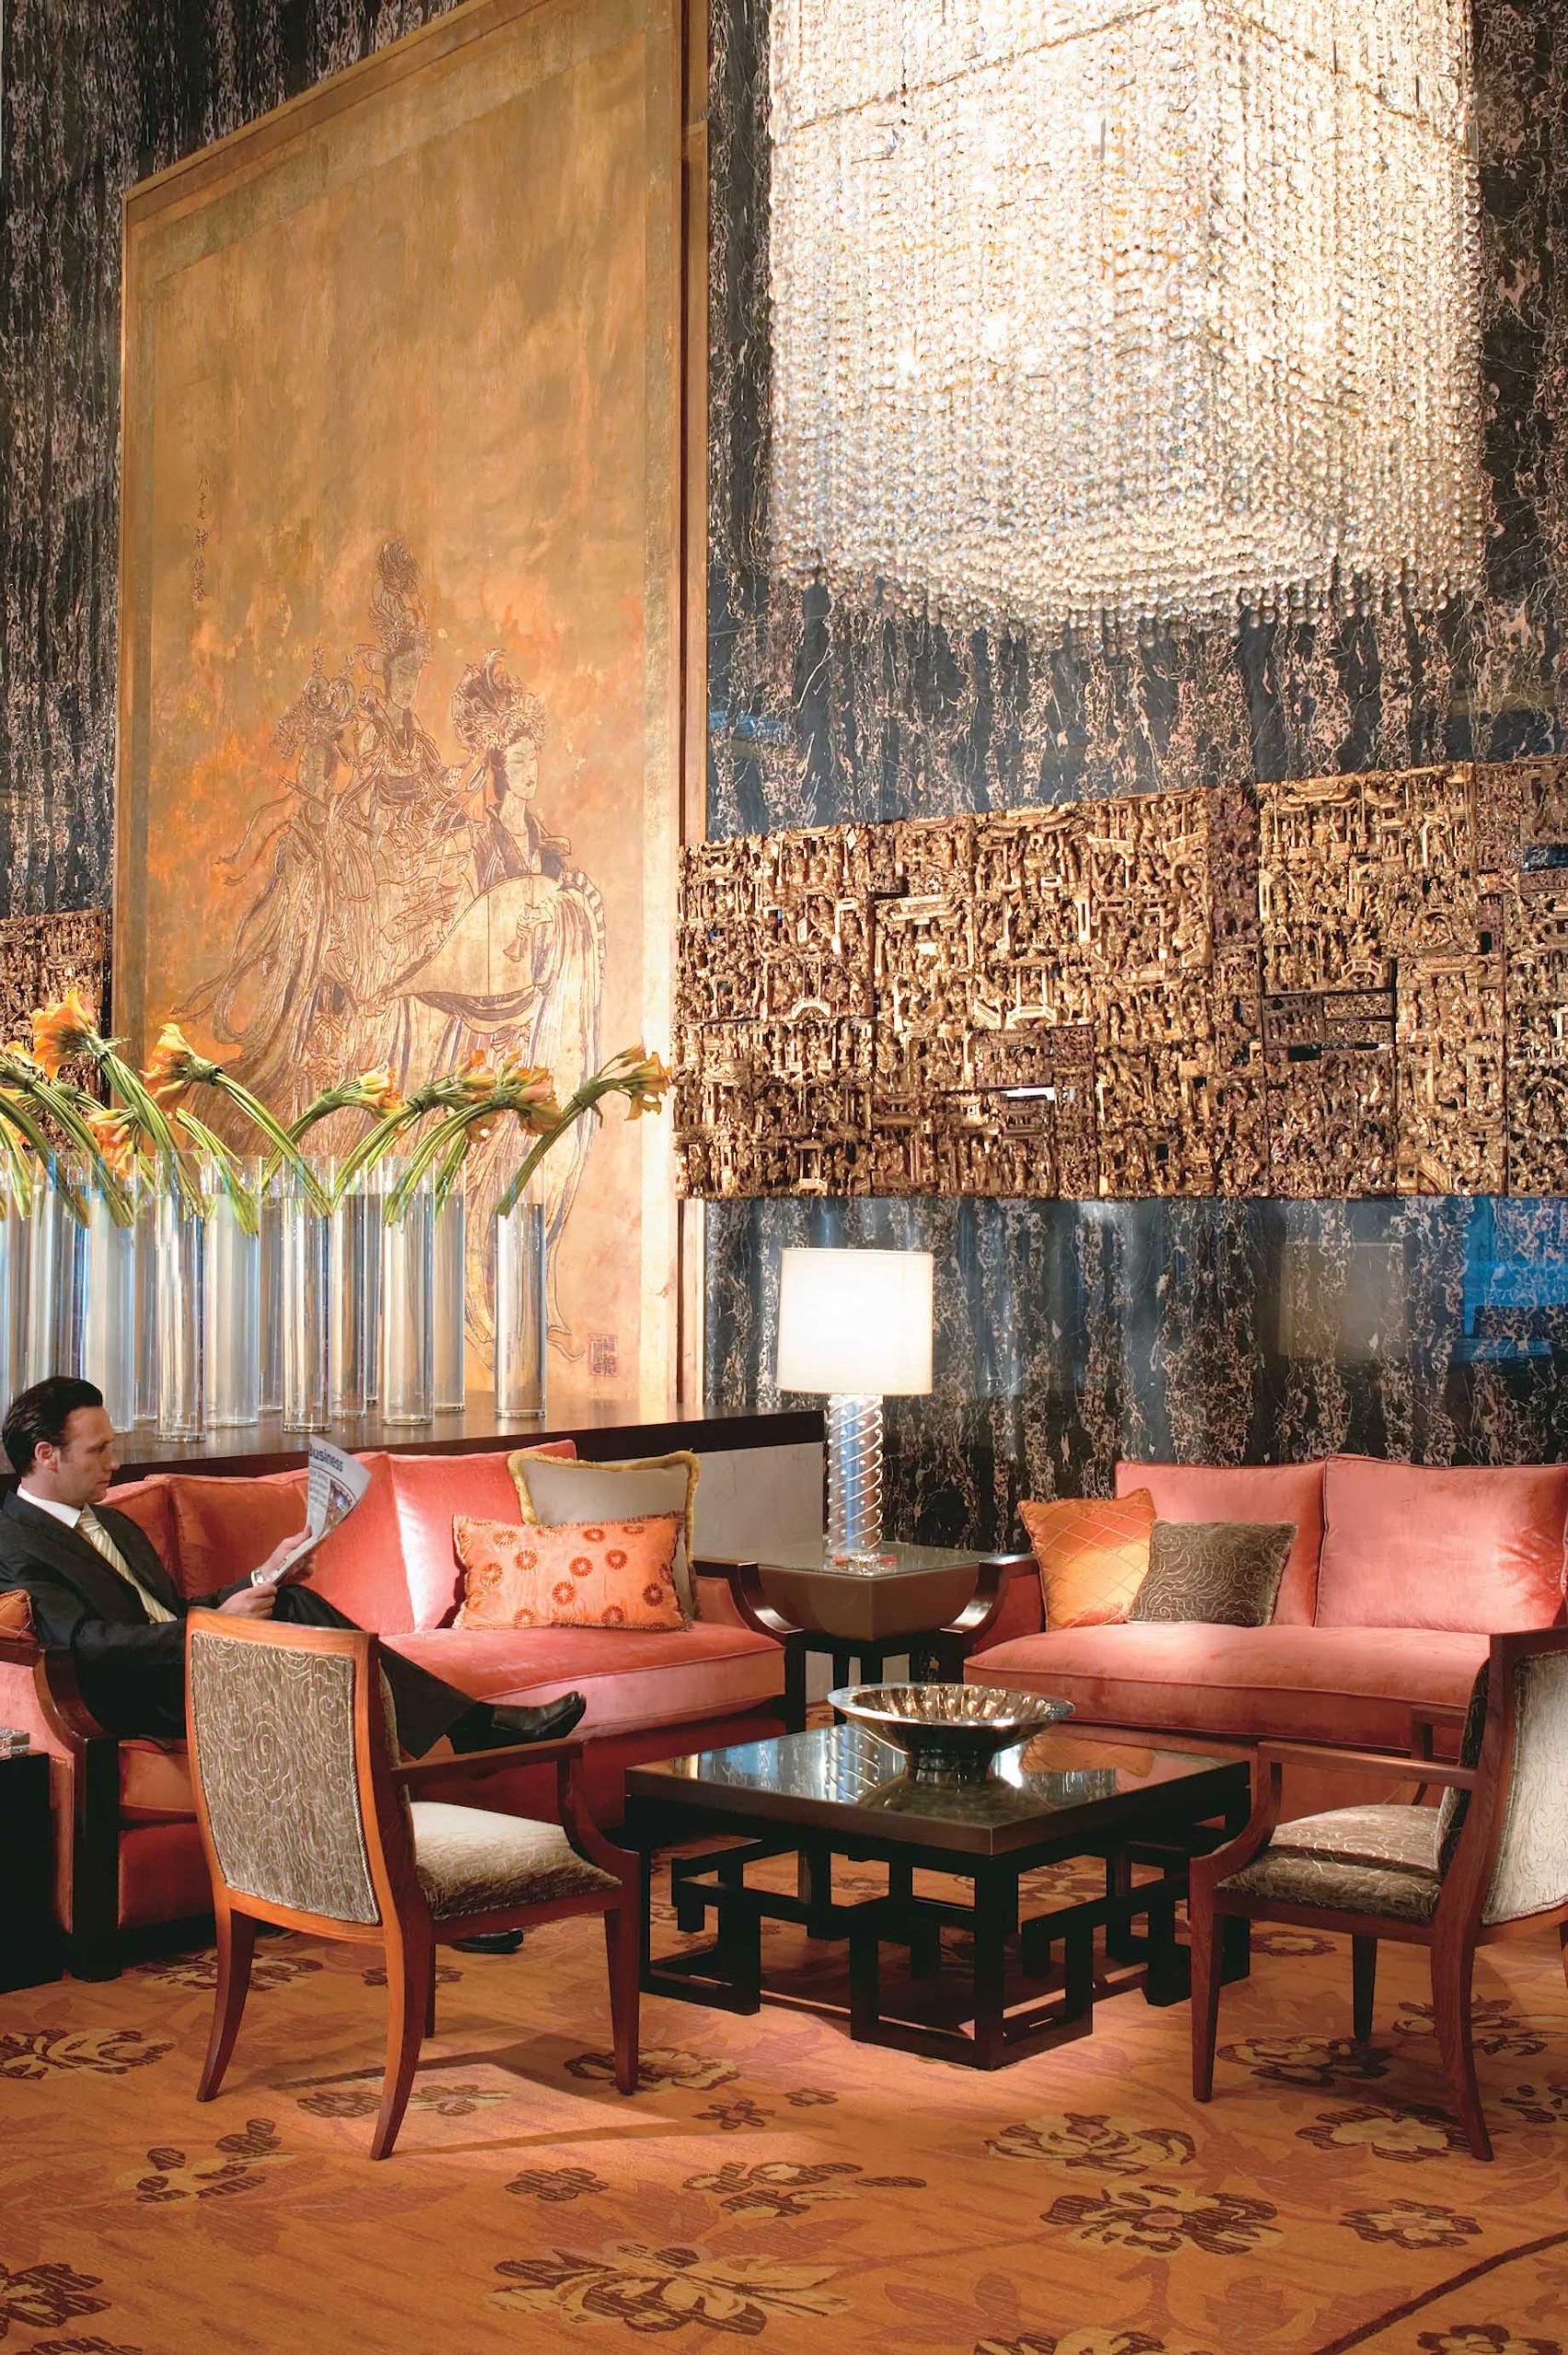 Mandarin Oriental, Hong Kong Hotel – Hong Kong, China – Lobby Seating